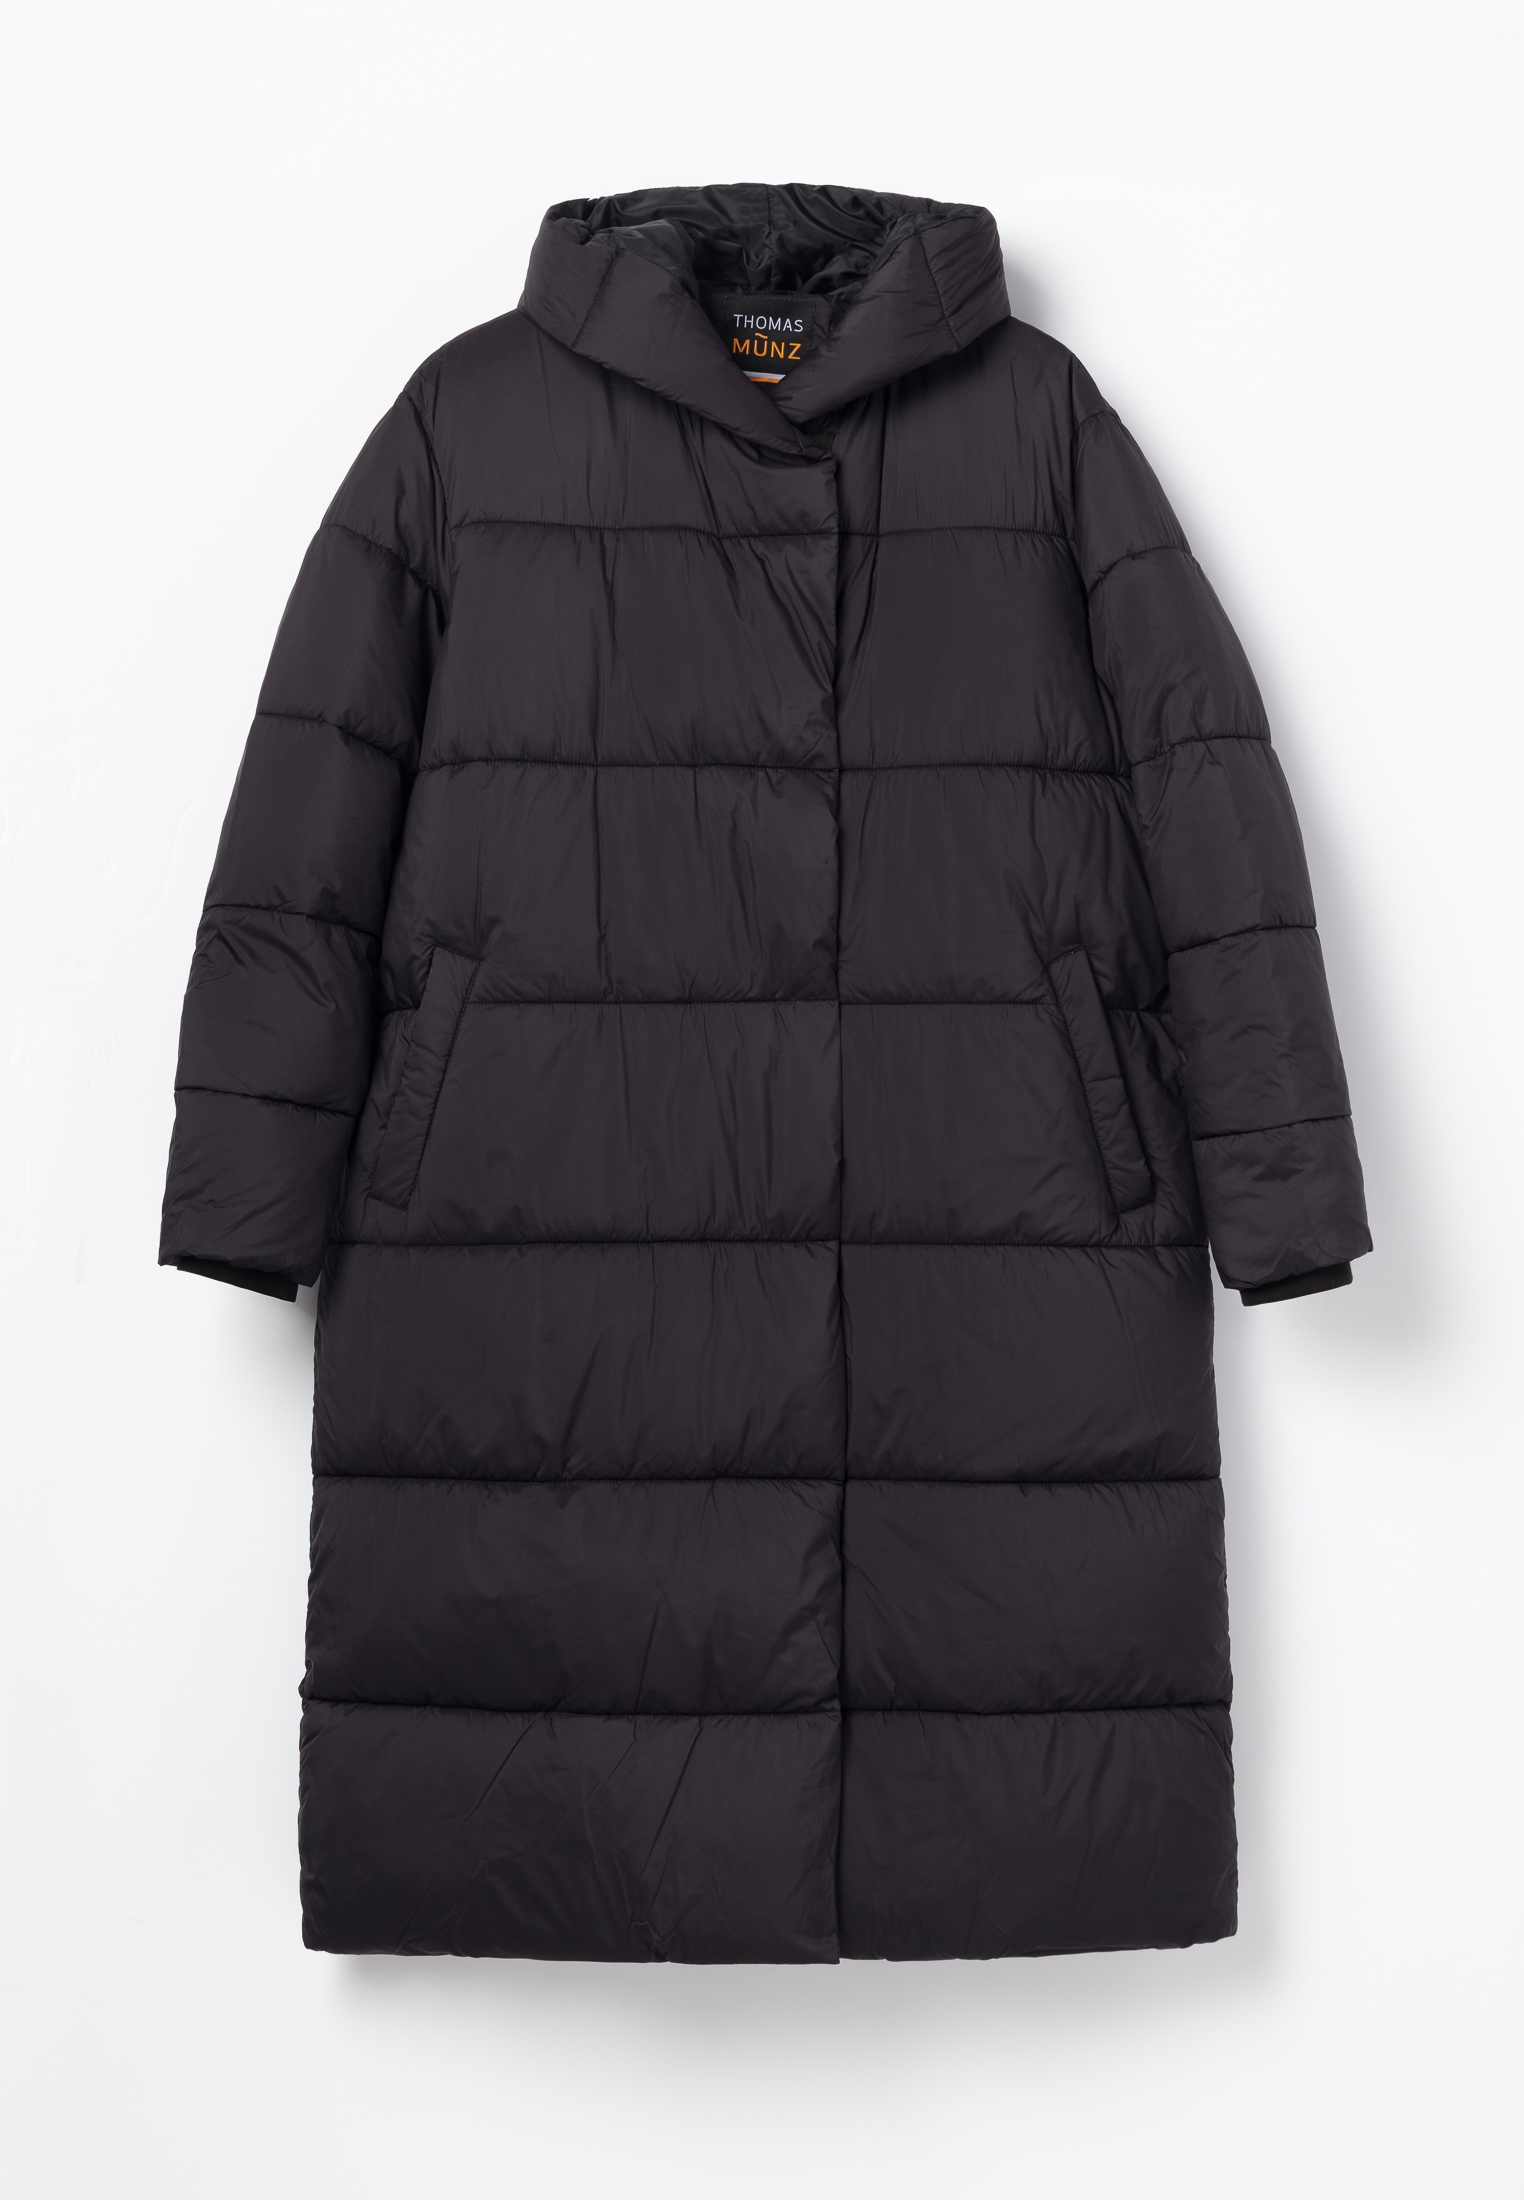 Пальто Thomas Munz 859-32N-1002, цвет черный, размер 48-170